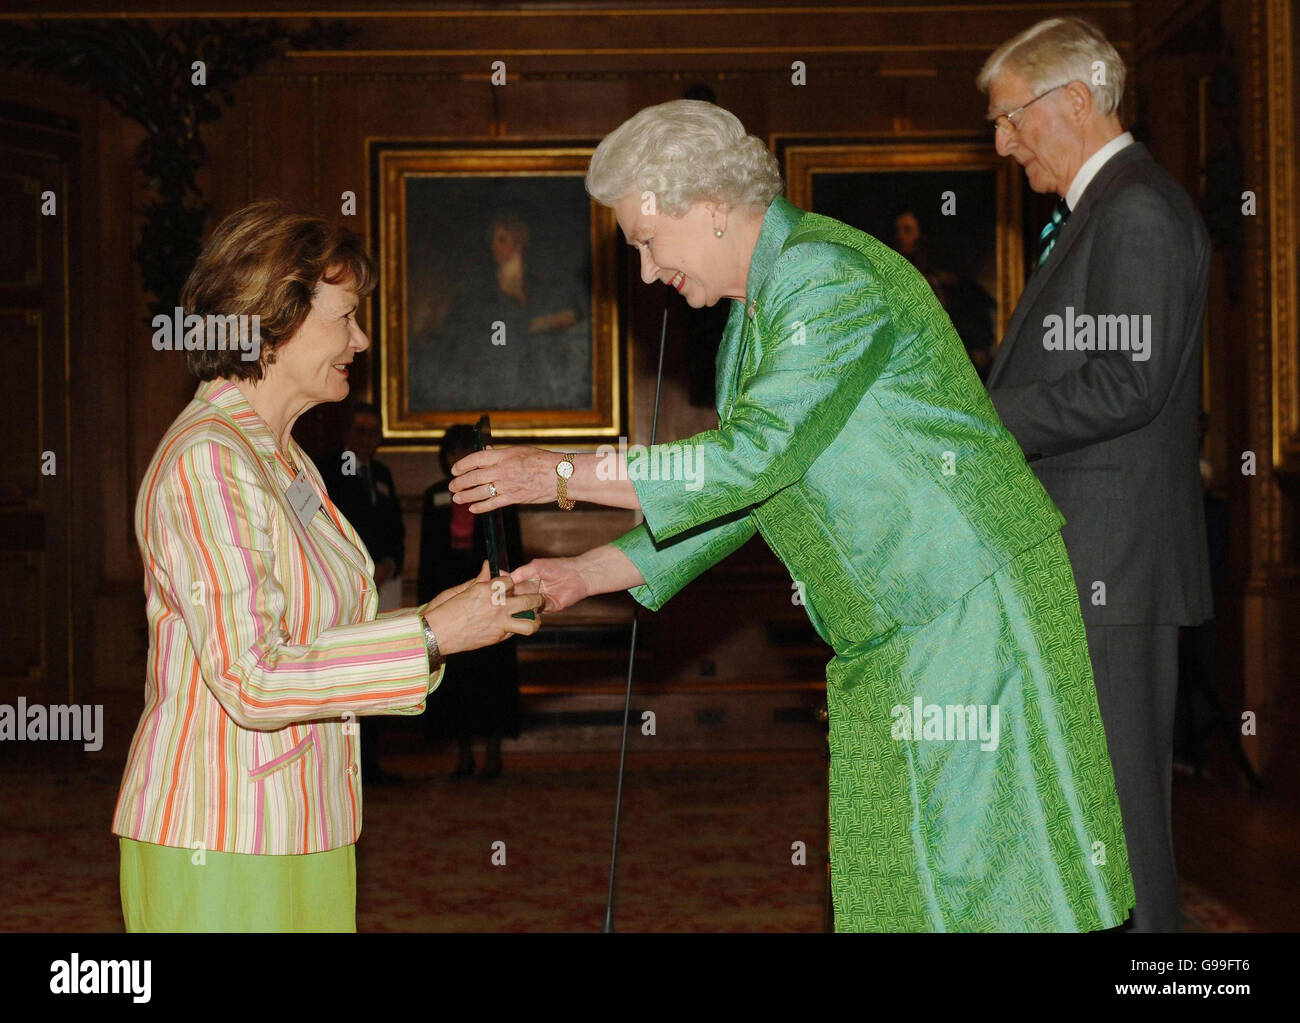 La Reina Isabel II presenta el premio Help the Aged Living Legend Media a la emisora, presentador y periodista Joan Bakewell, durante una ceremonia en el Castillo de Windsor, mientras que Michael Parkinson (derecha) también estuvo presente como presentador. Foto de stock